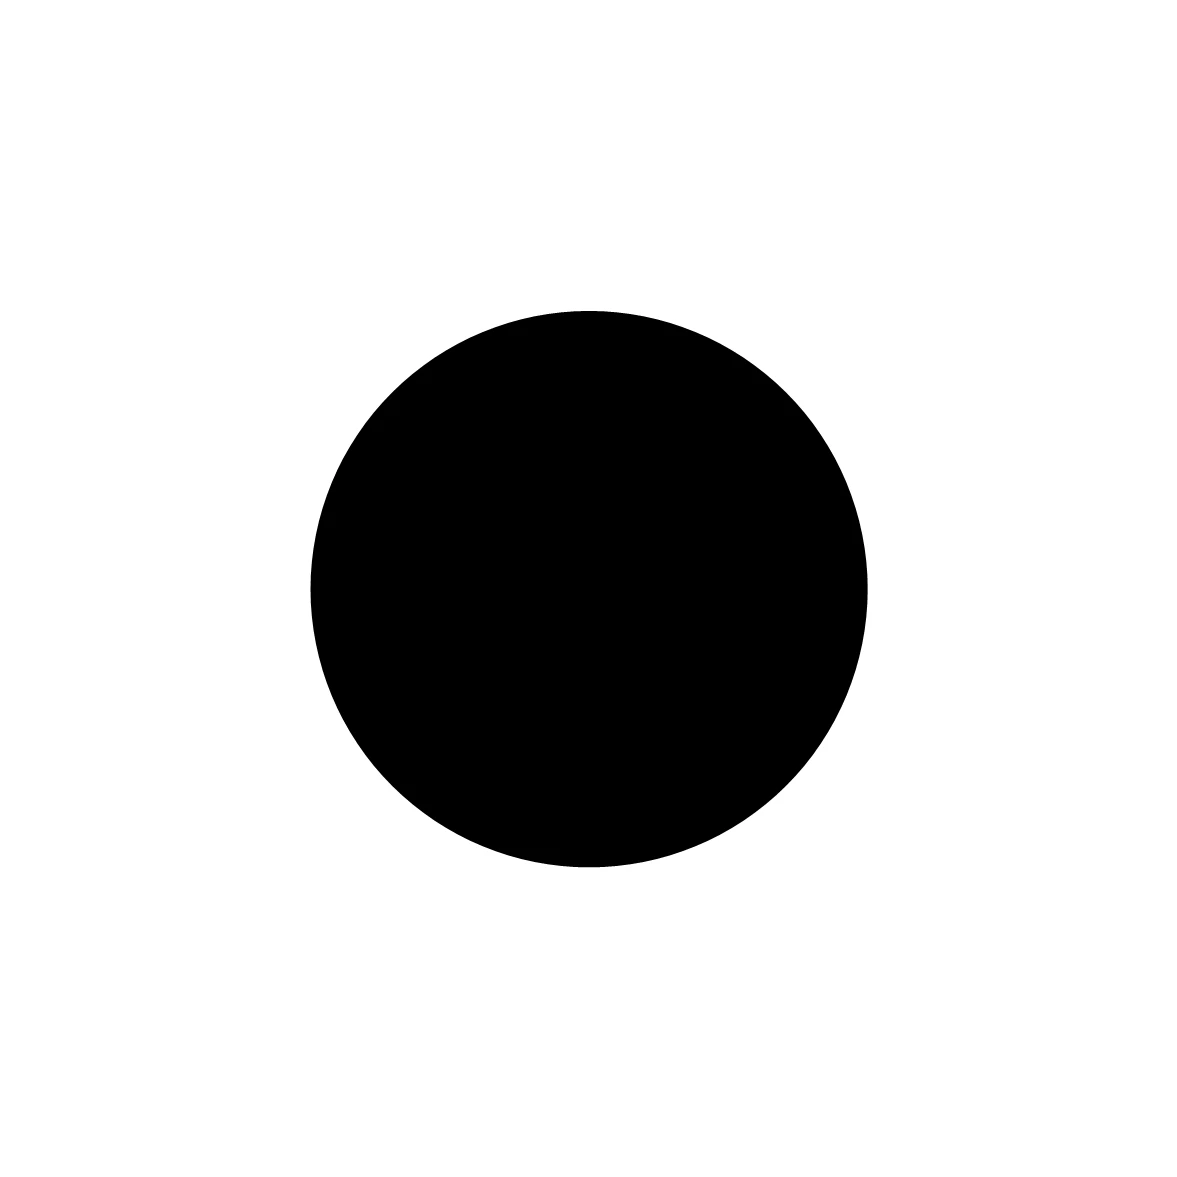 Moosgummidichtung rund | 15 mm Durchmesser | Farbe: schwarz